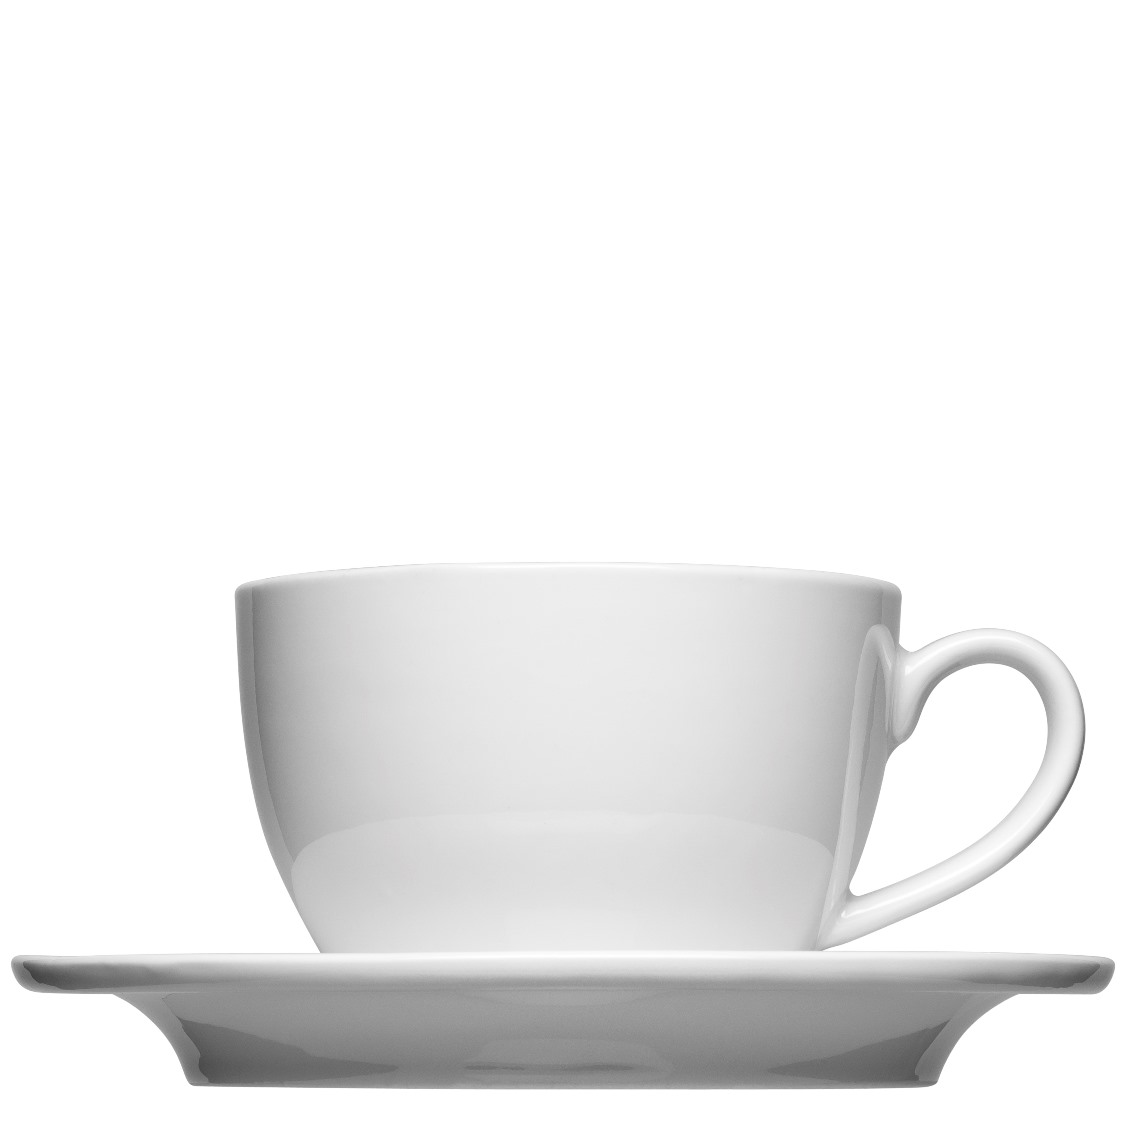 Cappuccinotasse Form 536 zum bedrucken mit einem Logo oder einer Grafik als Werbegeschenk, Werbeartikel oder Werbemittel